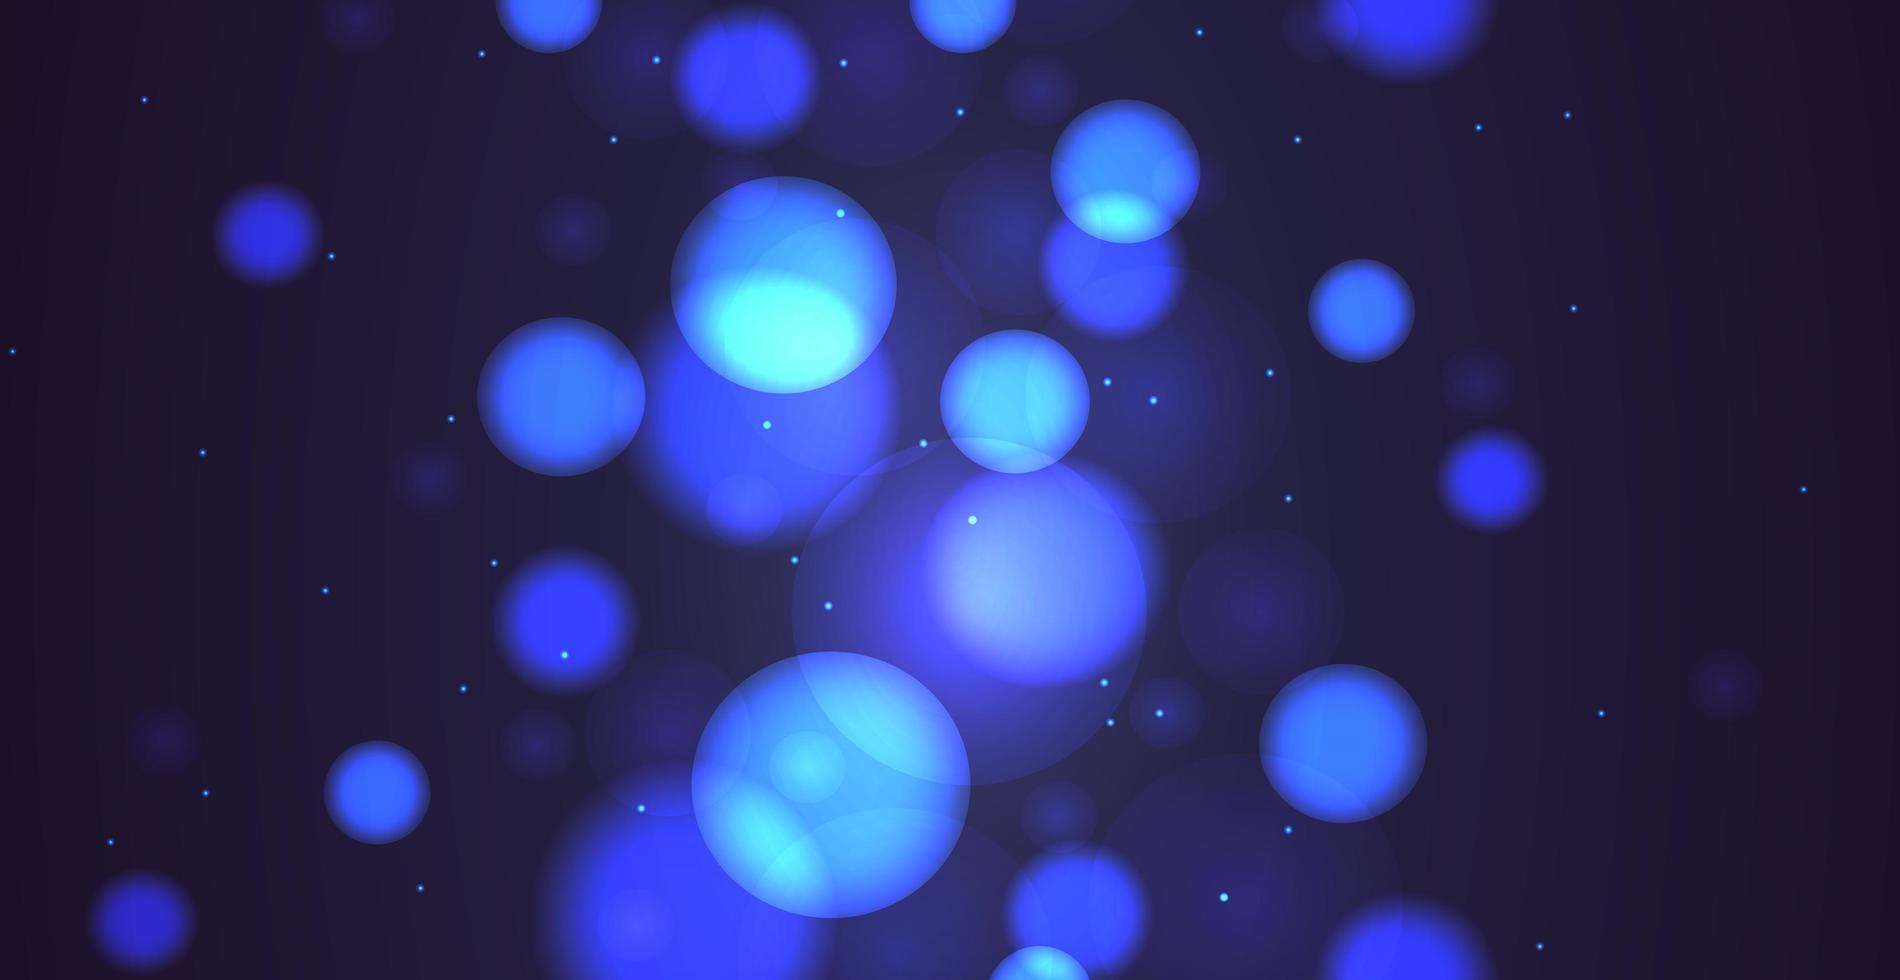 abstracte blauwe bokeh achtergrond met intreepupil cirkels en glitter. decoratie-element voor kerst- en nieuwjaarsvakanties, wenskaarten, webbanners, posters - vector